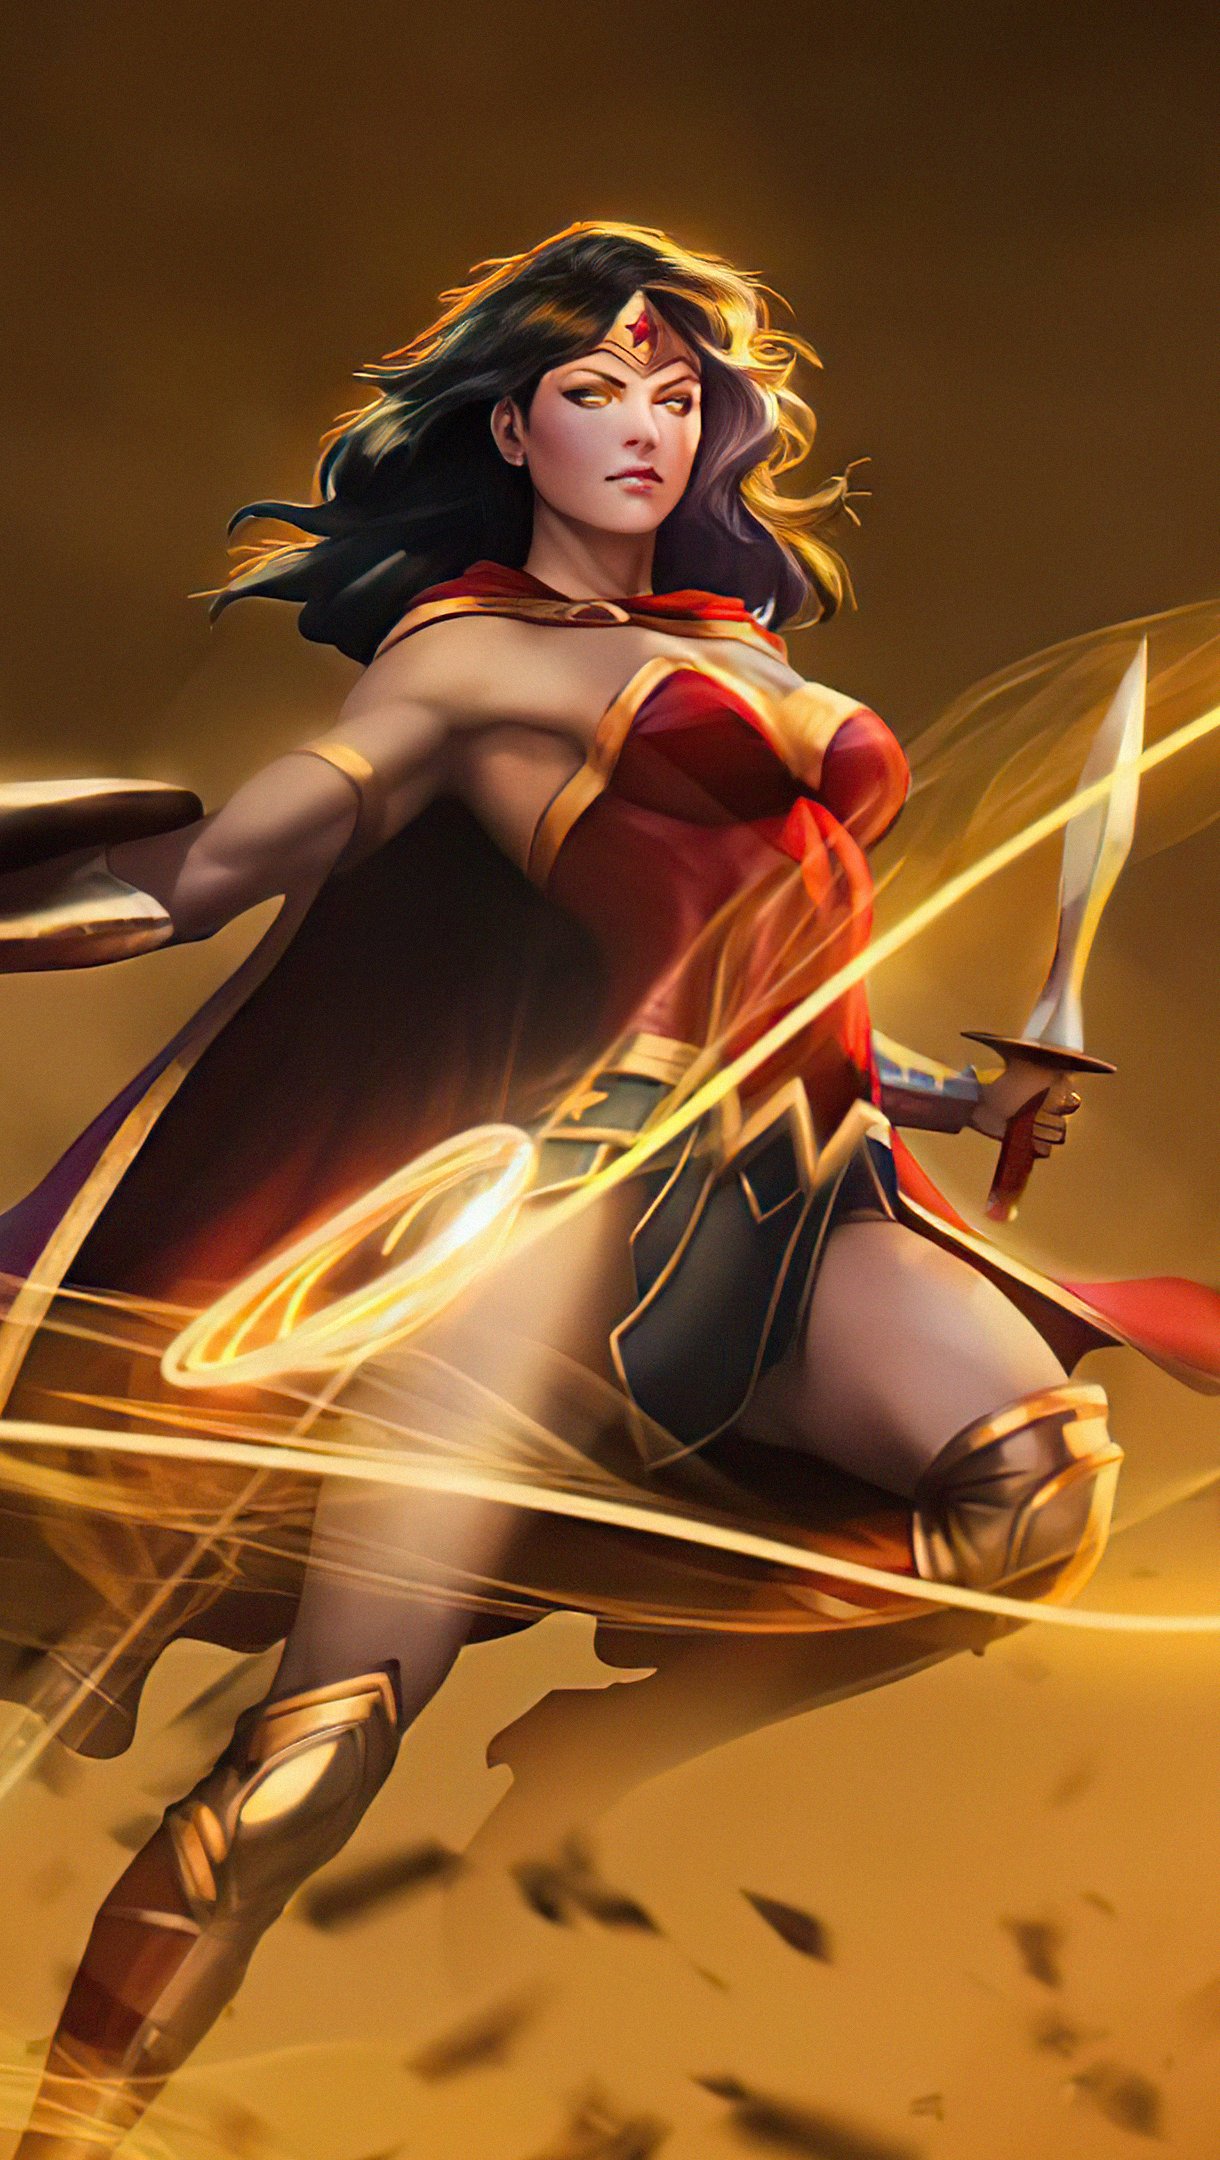 Wallpaper Wonder Woman Fanart 2020 Vertical